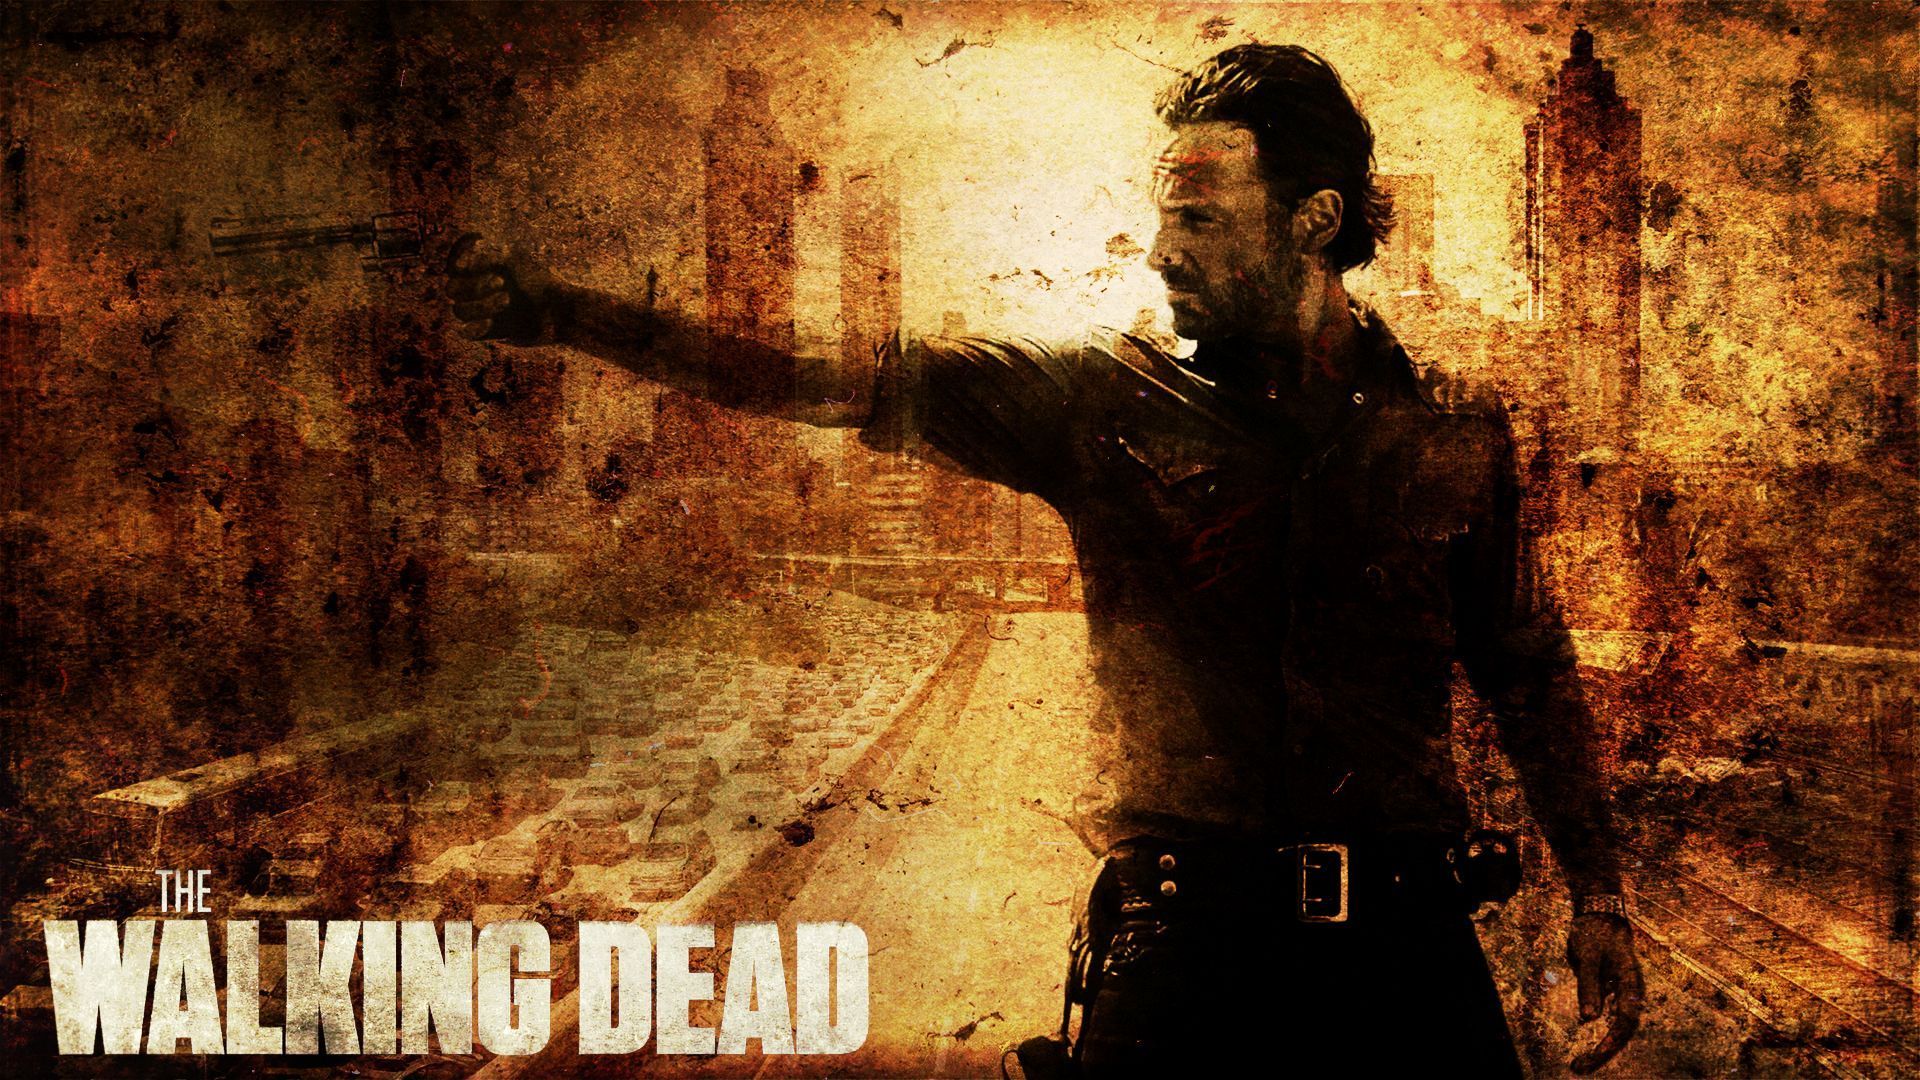 The Walking Dead Wallpaper , HD Wallpaper & Backgrounds